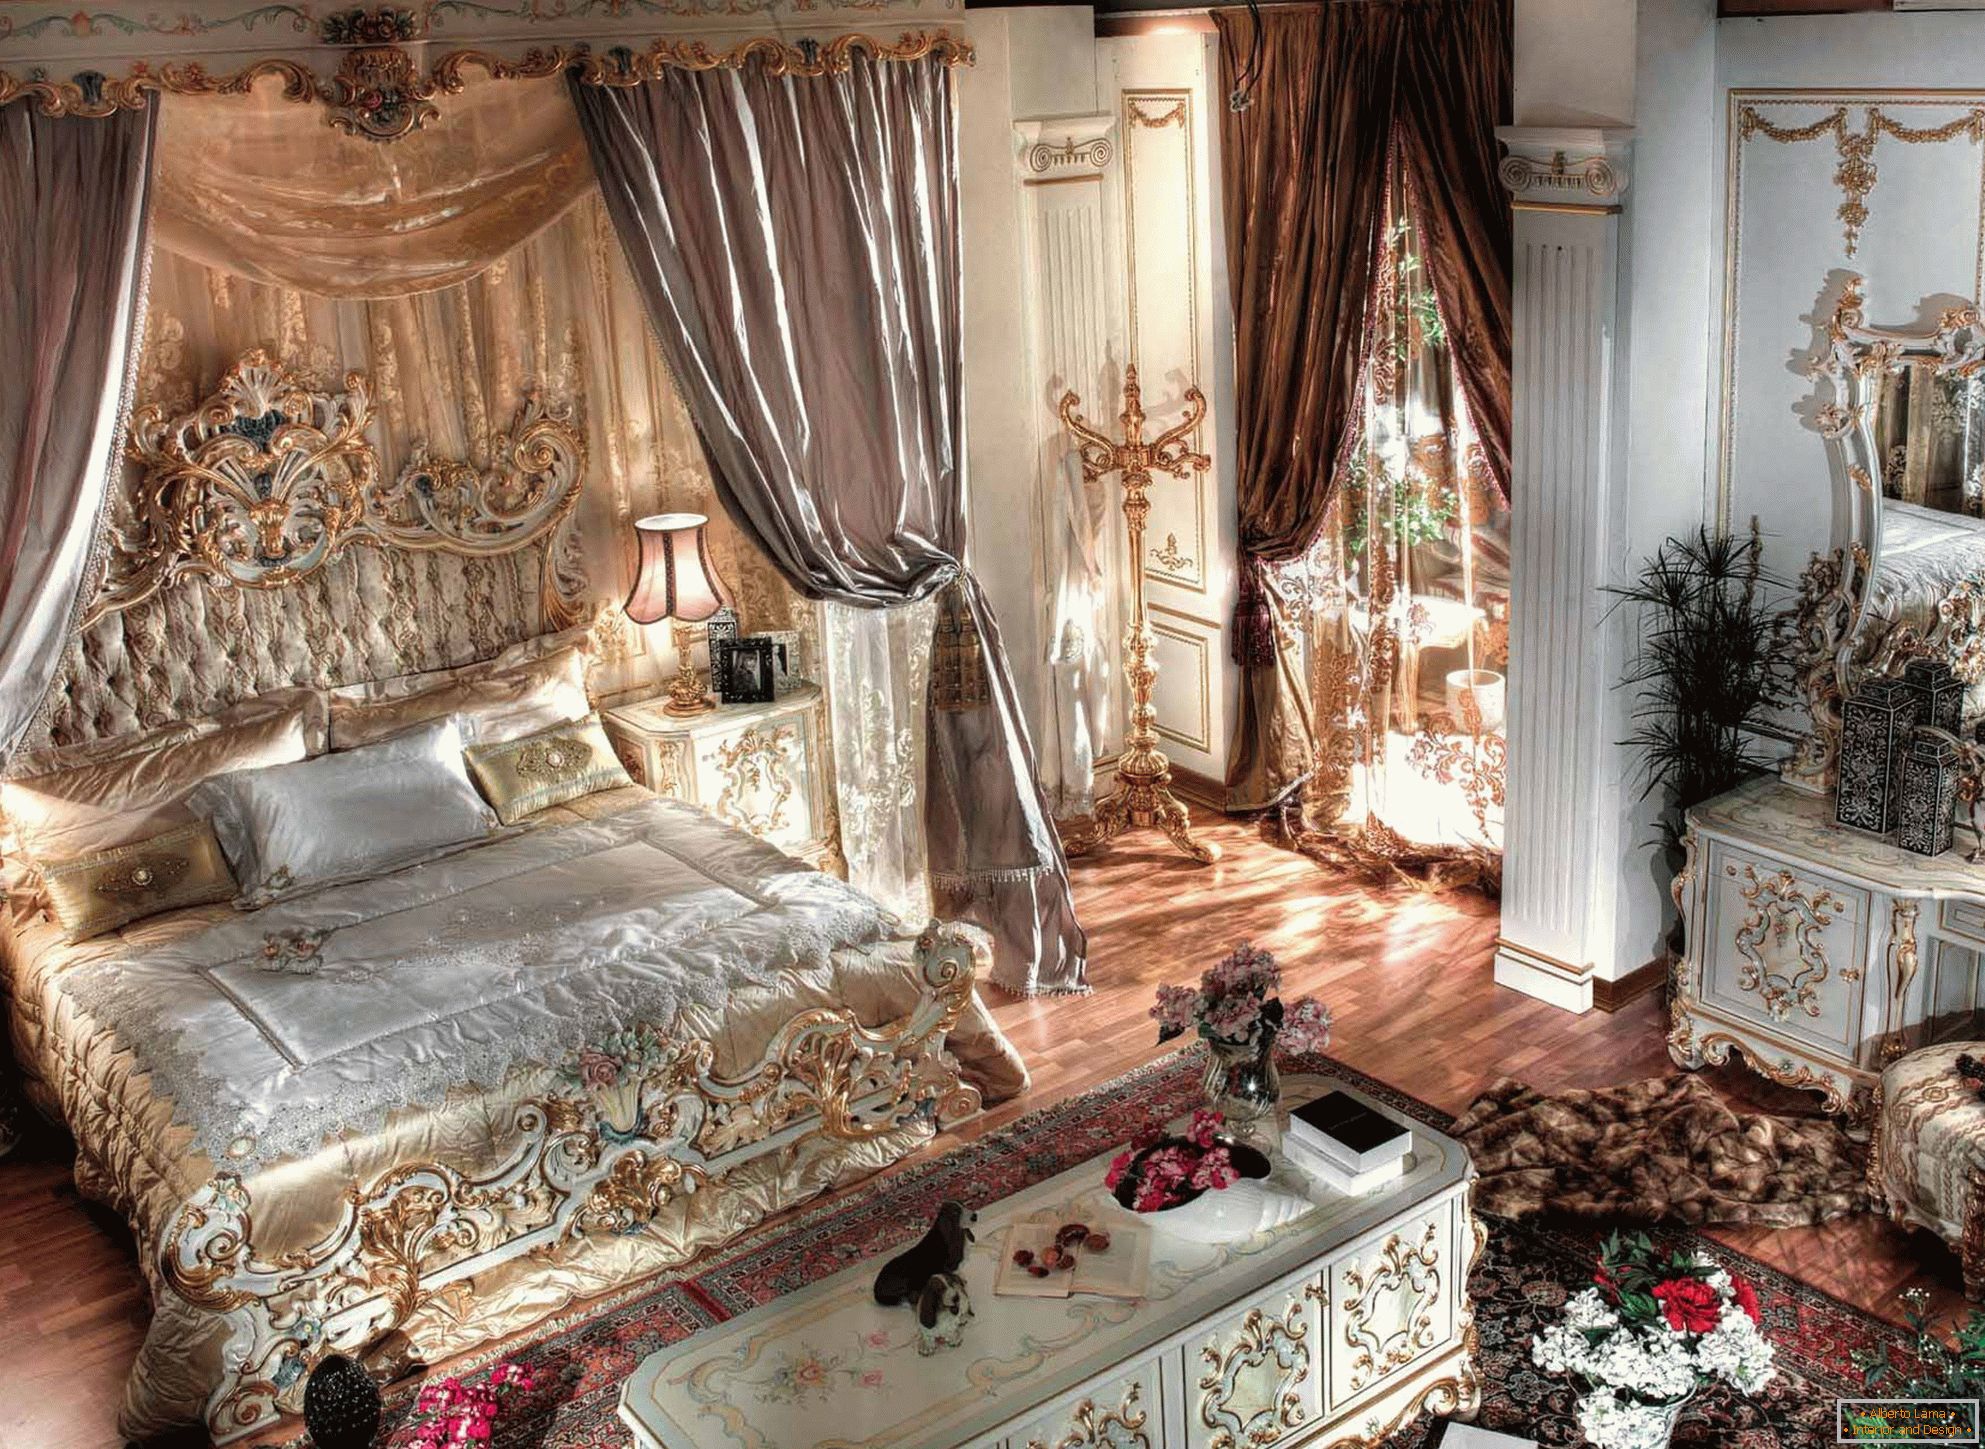 Луксозна барокова спалня с високи тавани. В центъра на композицията е масивно легло от дърво с издълбани гръбчета.